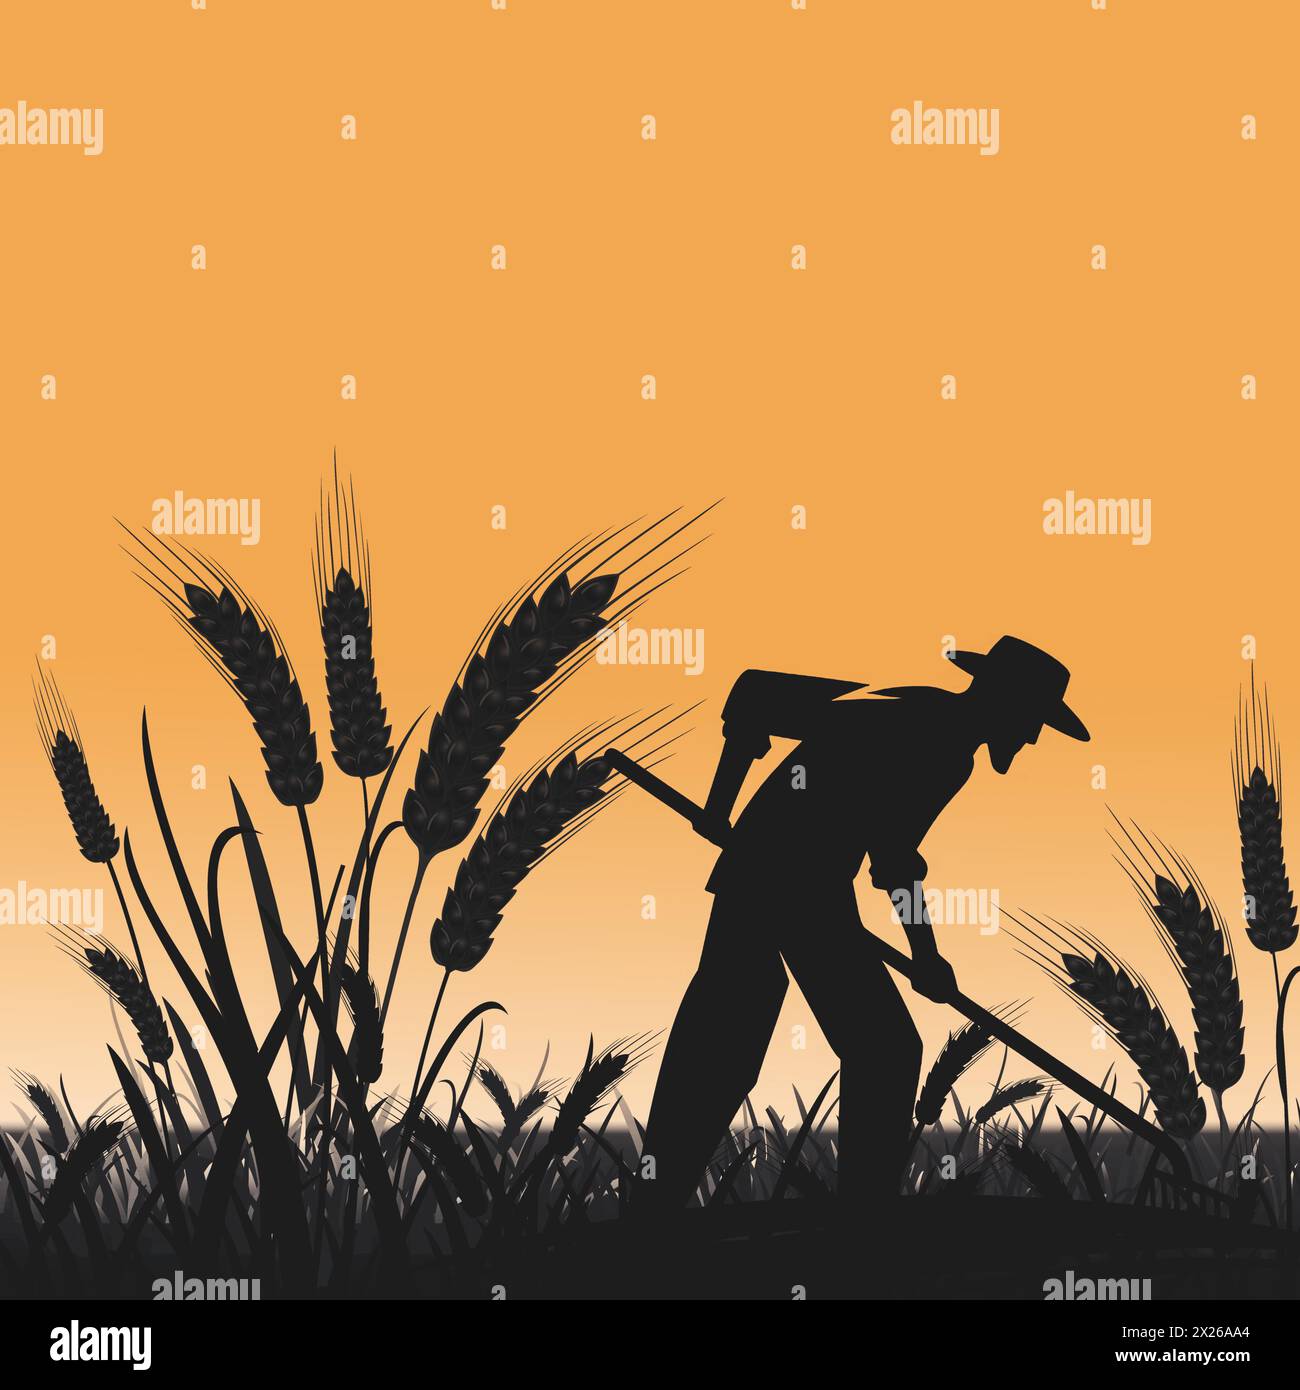 Dans la lueur chaude du crépuscule, la silhouette d'un agriculteur travaille sans relâche, symbolisant le dévouement derrière nos récoltes, marquant la Journée mondiale des agriculteurs. Illustration de Vecteur